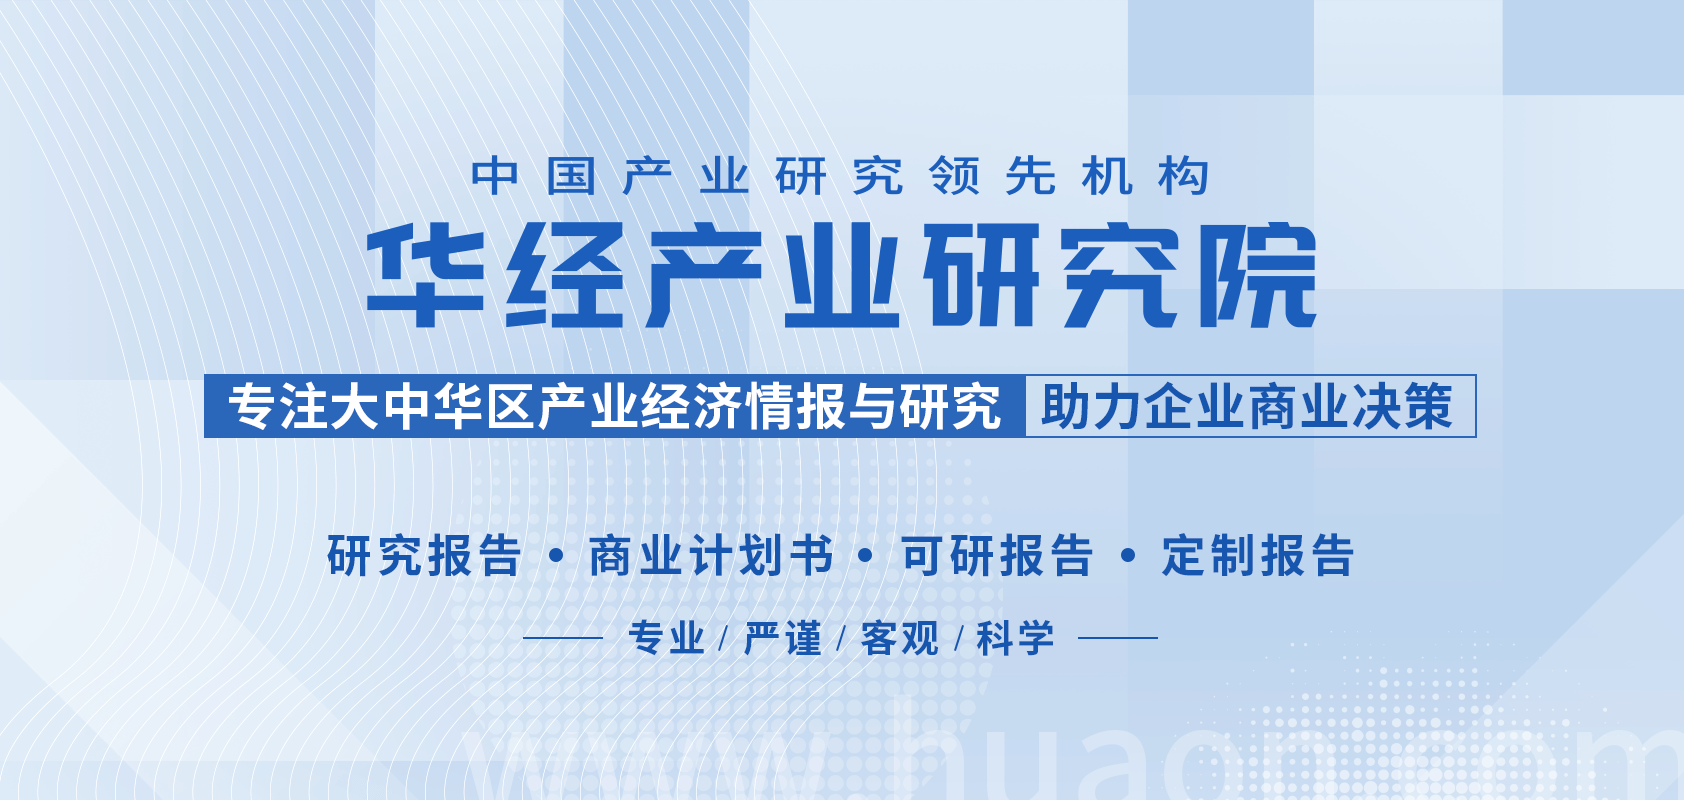 链上小镇苹果版:2022年中国胶印版材上下游产业链、主要产业政策及重点企业分析